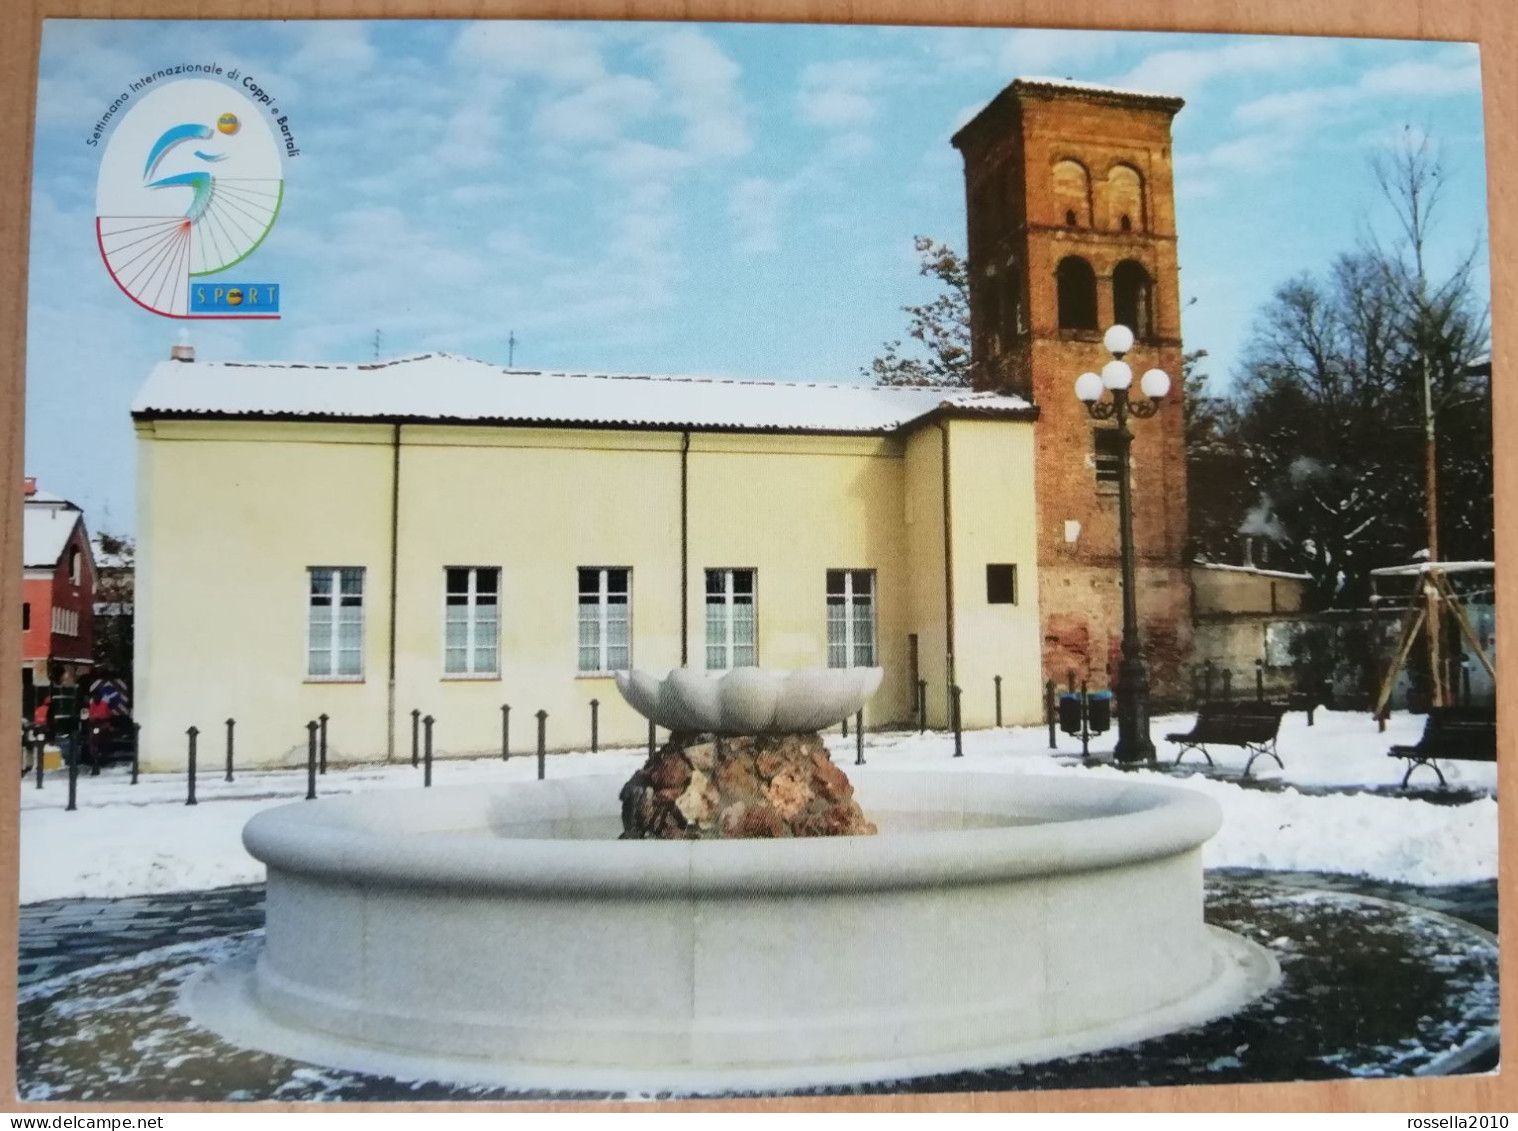 CARTOLINA CICLISMO ITALIA SASSUOLO 2003 SETTIMANA INTERNAZIONALE DI COPPI BARTALI Italy Postcard ITALIEN Ansichtskarten - Betogingen